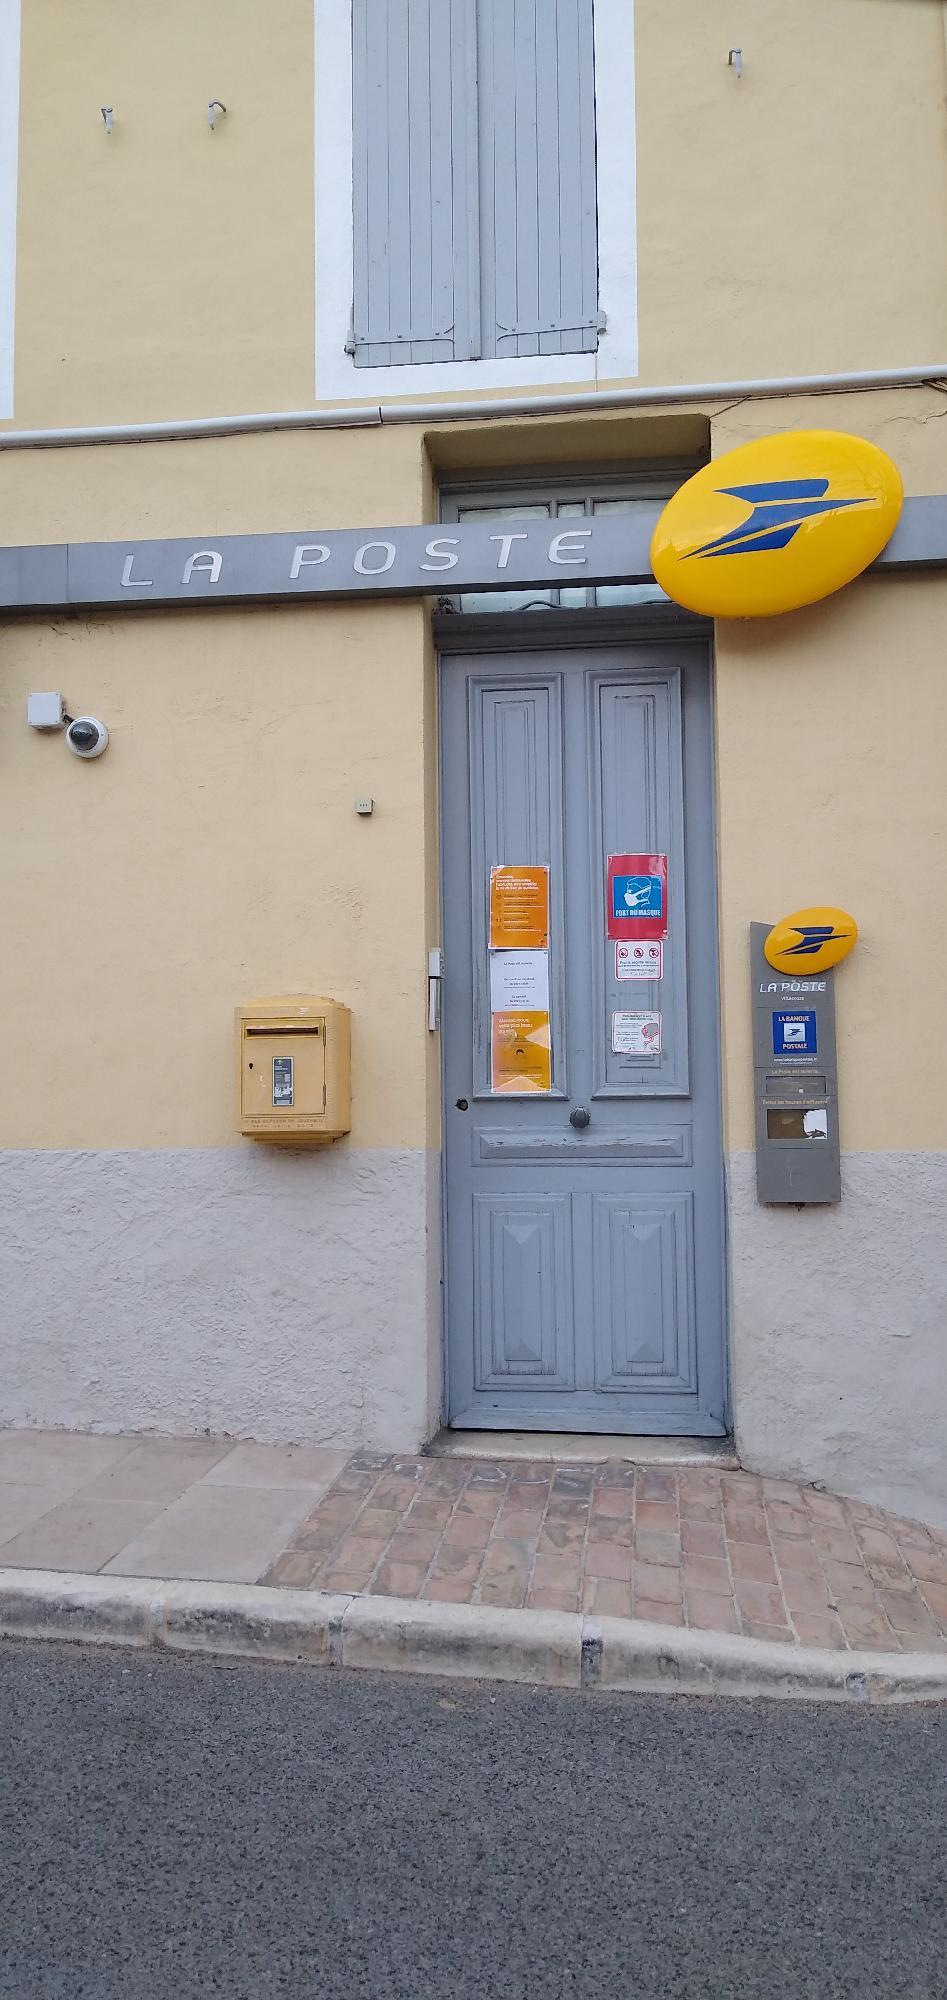 La Poste - Closed Villecroze